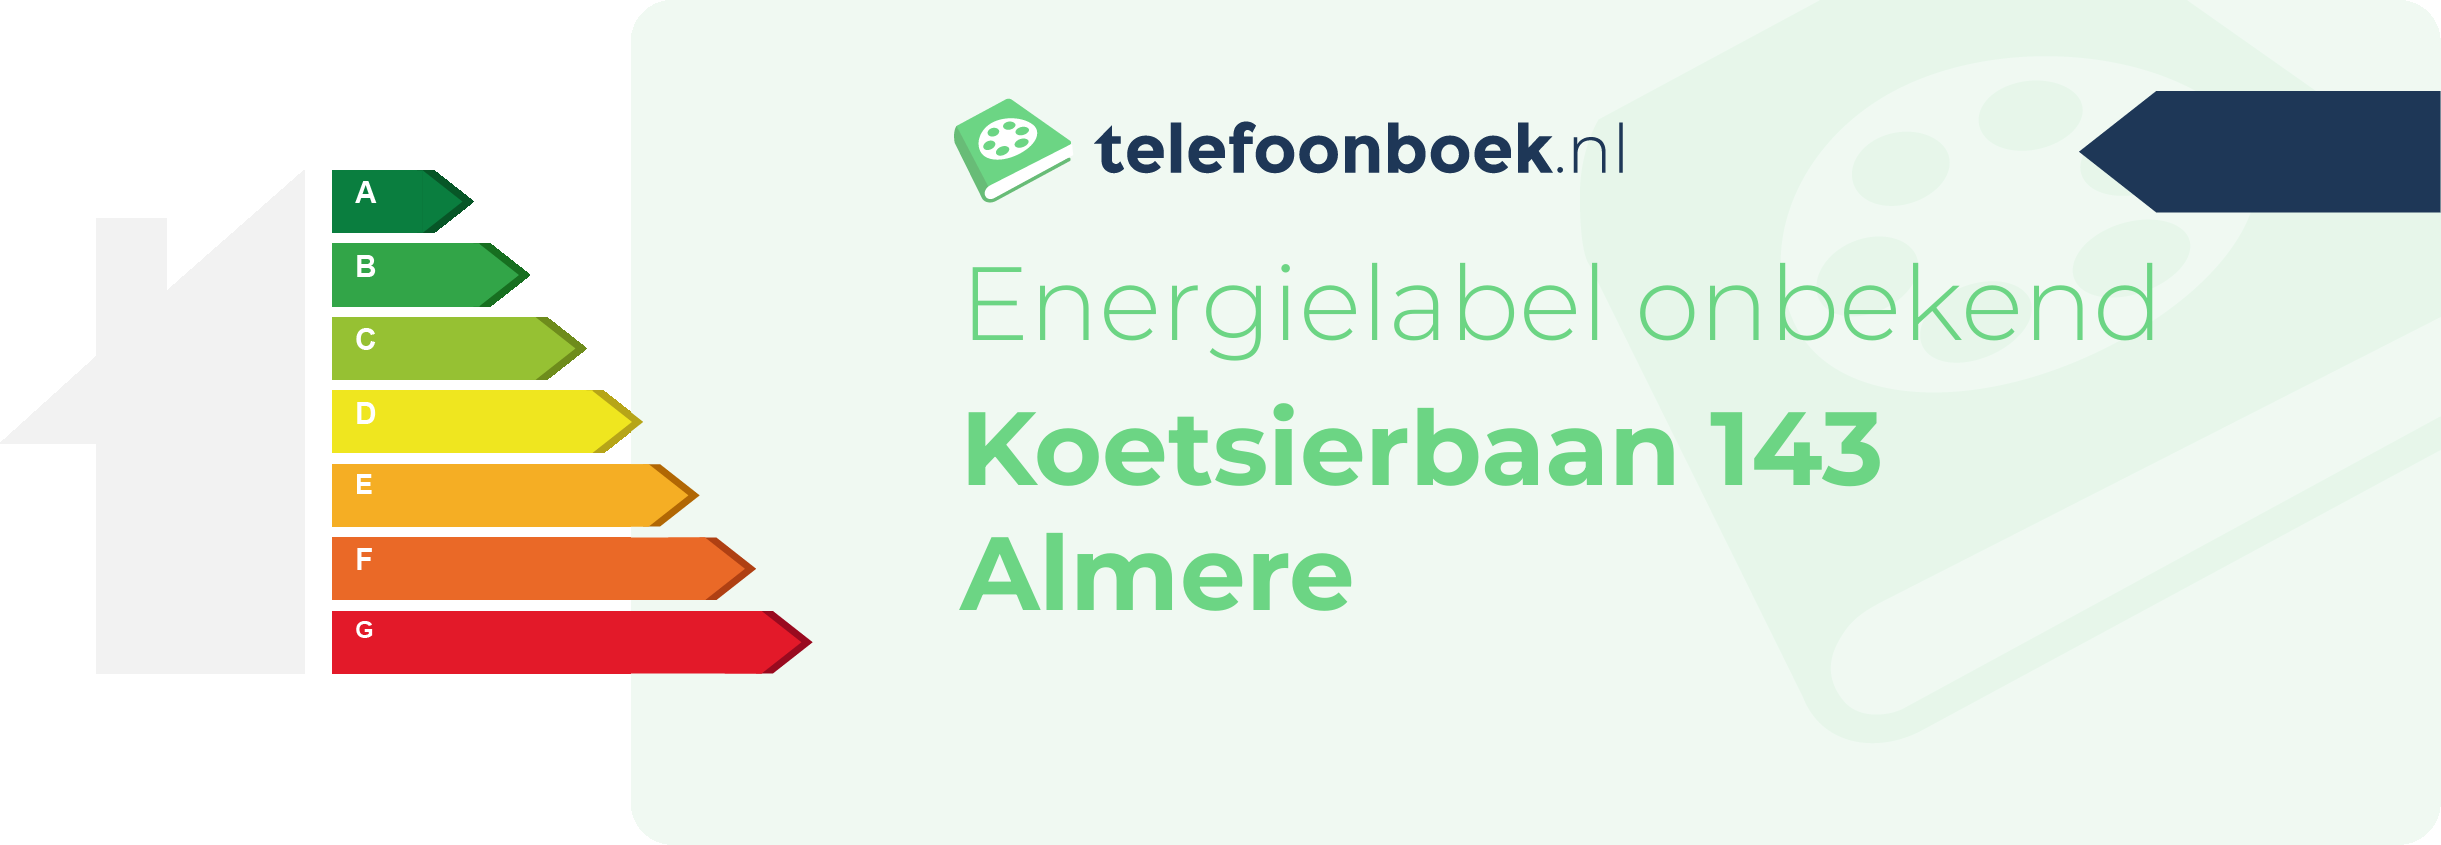 Energielabel Koetsierbaan 143 Almere